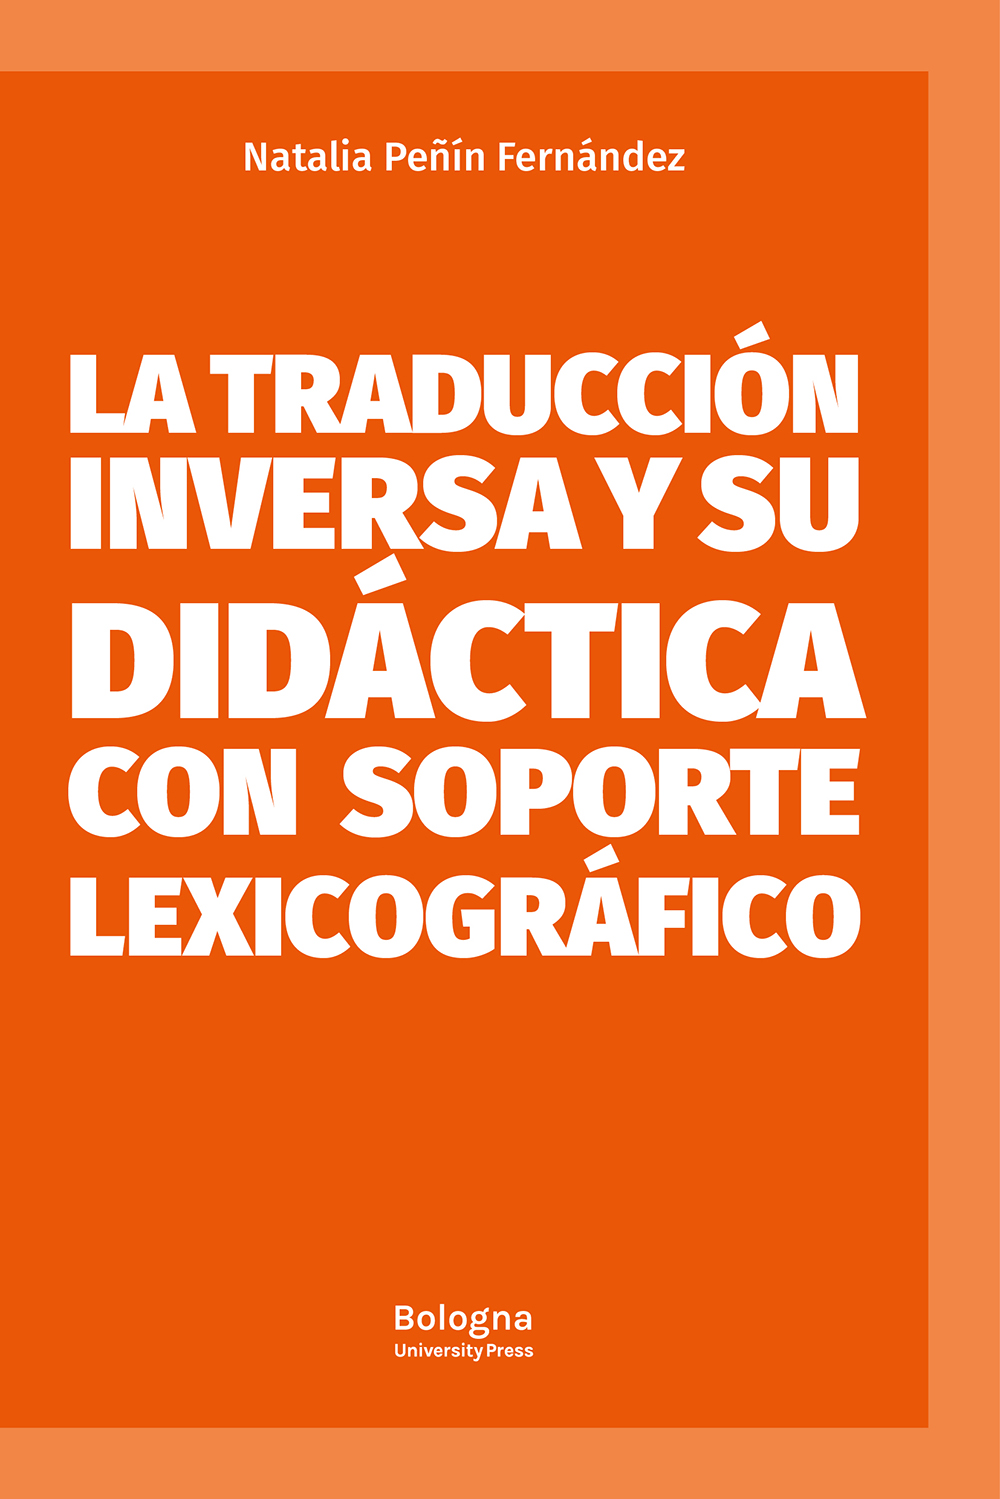 La traducción inversa y su didáctica con soporte lexicográfico - Bologna University Press